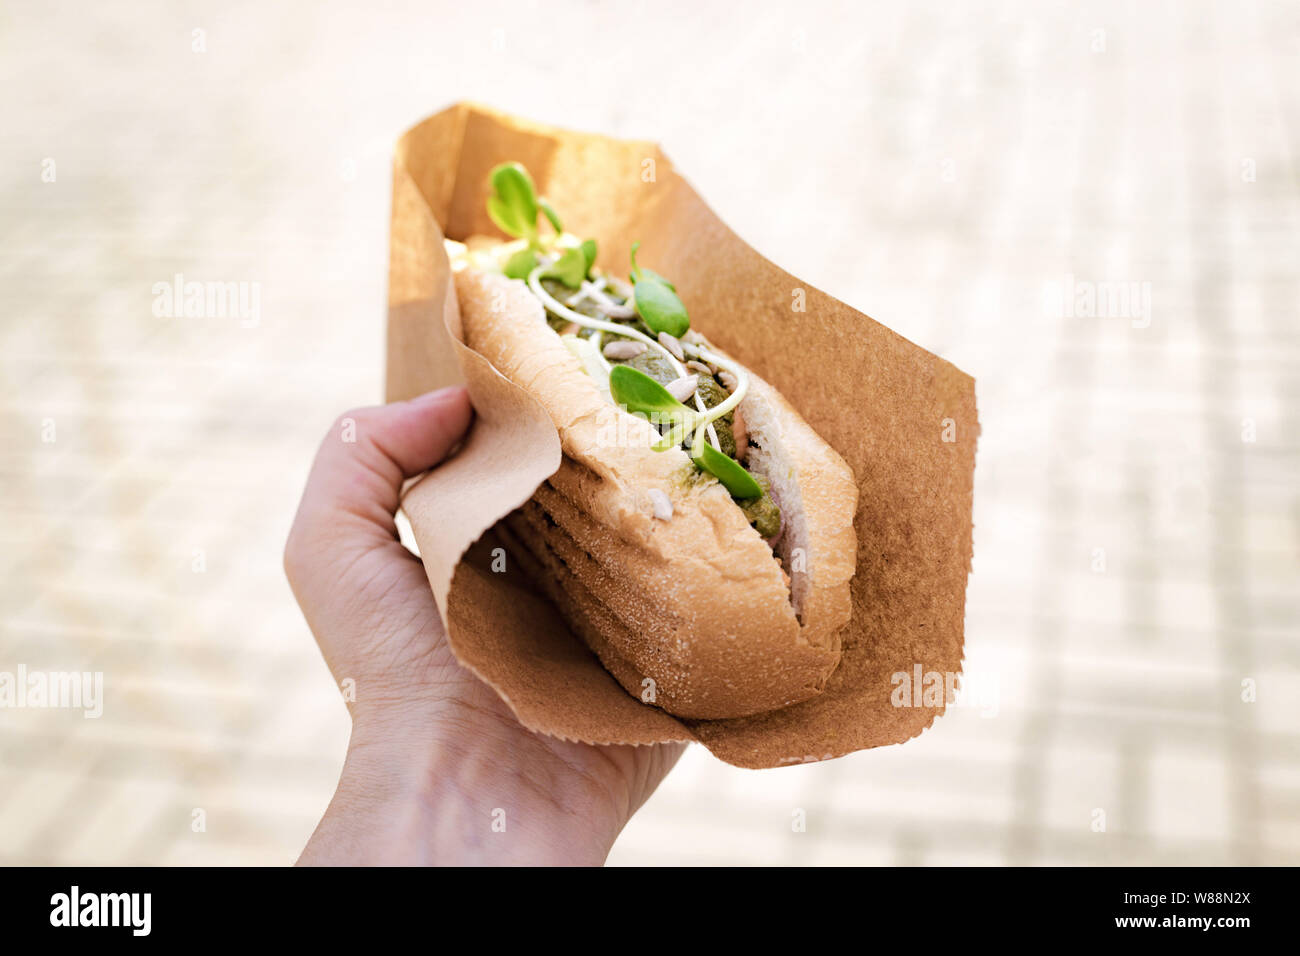 Hot dog végétarien, végétalien avec saucisse de soja à main de femme dans un festival de rue Banque D'Images